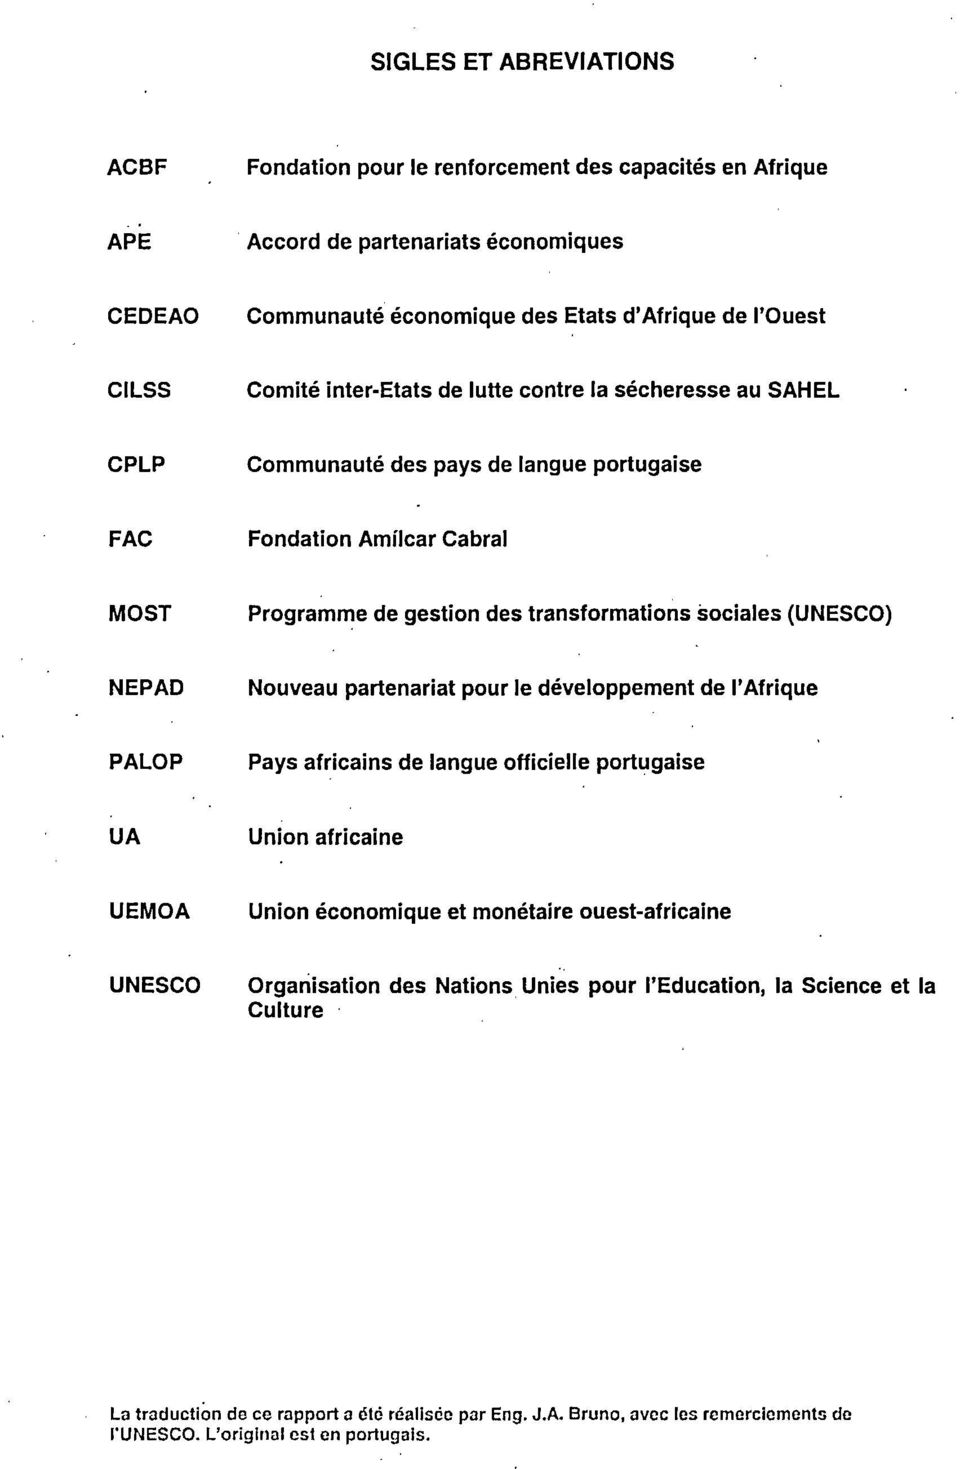 (UNESCO) NEPAD Nouveau partenariat pour le développement de l'afrique PALOP Pays africains de langue officielle portugaise UA Union africaine UEMOA Union économique et monétaire ouest-africaine